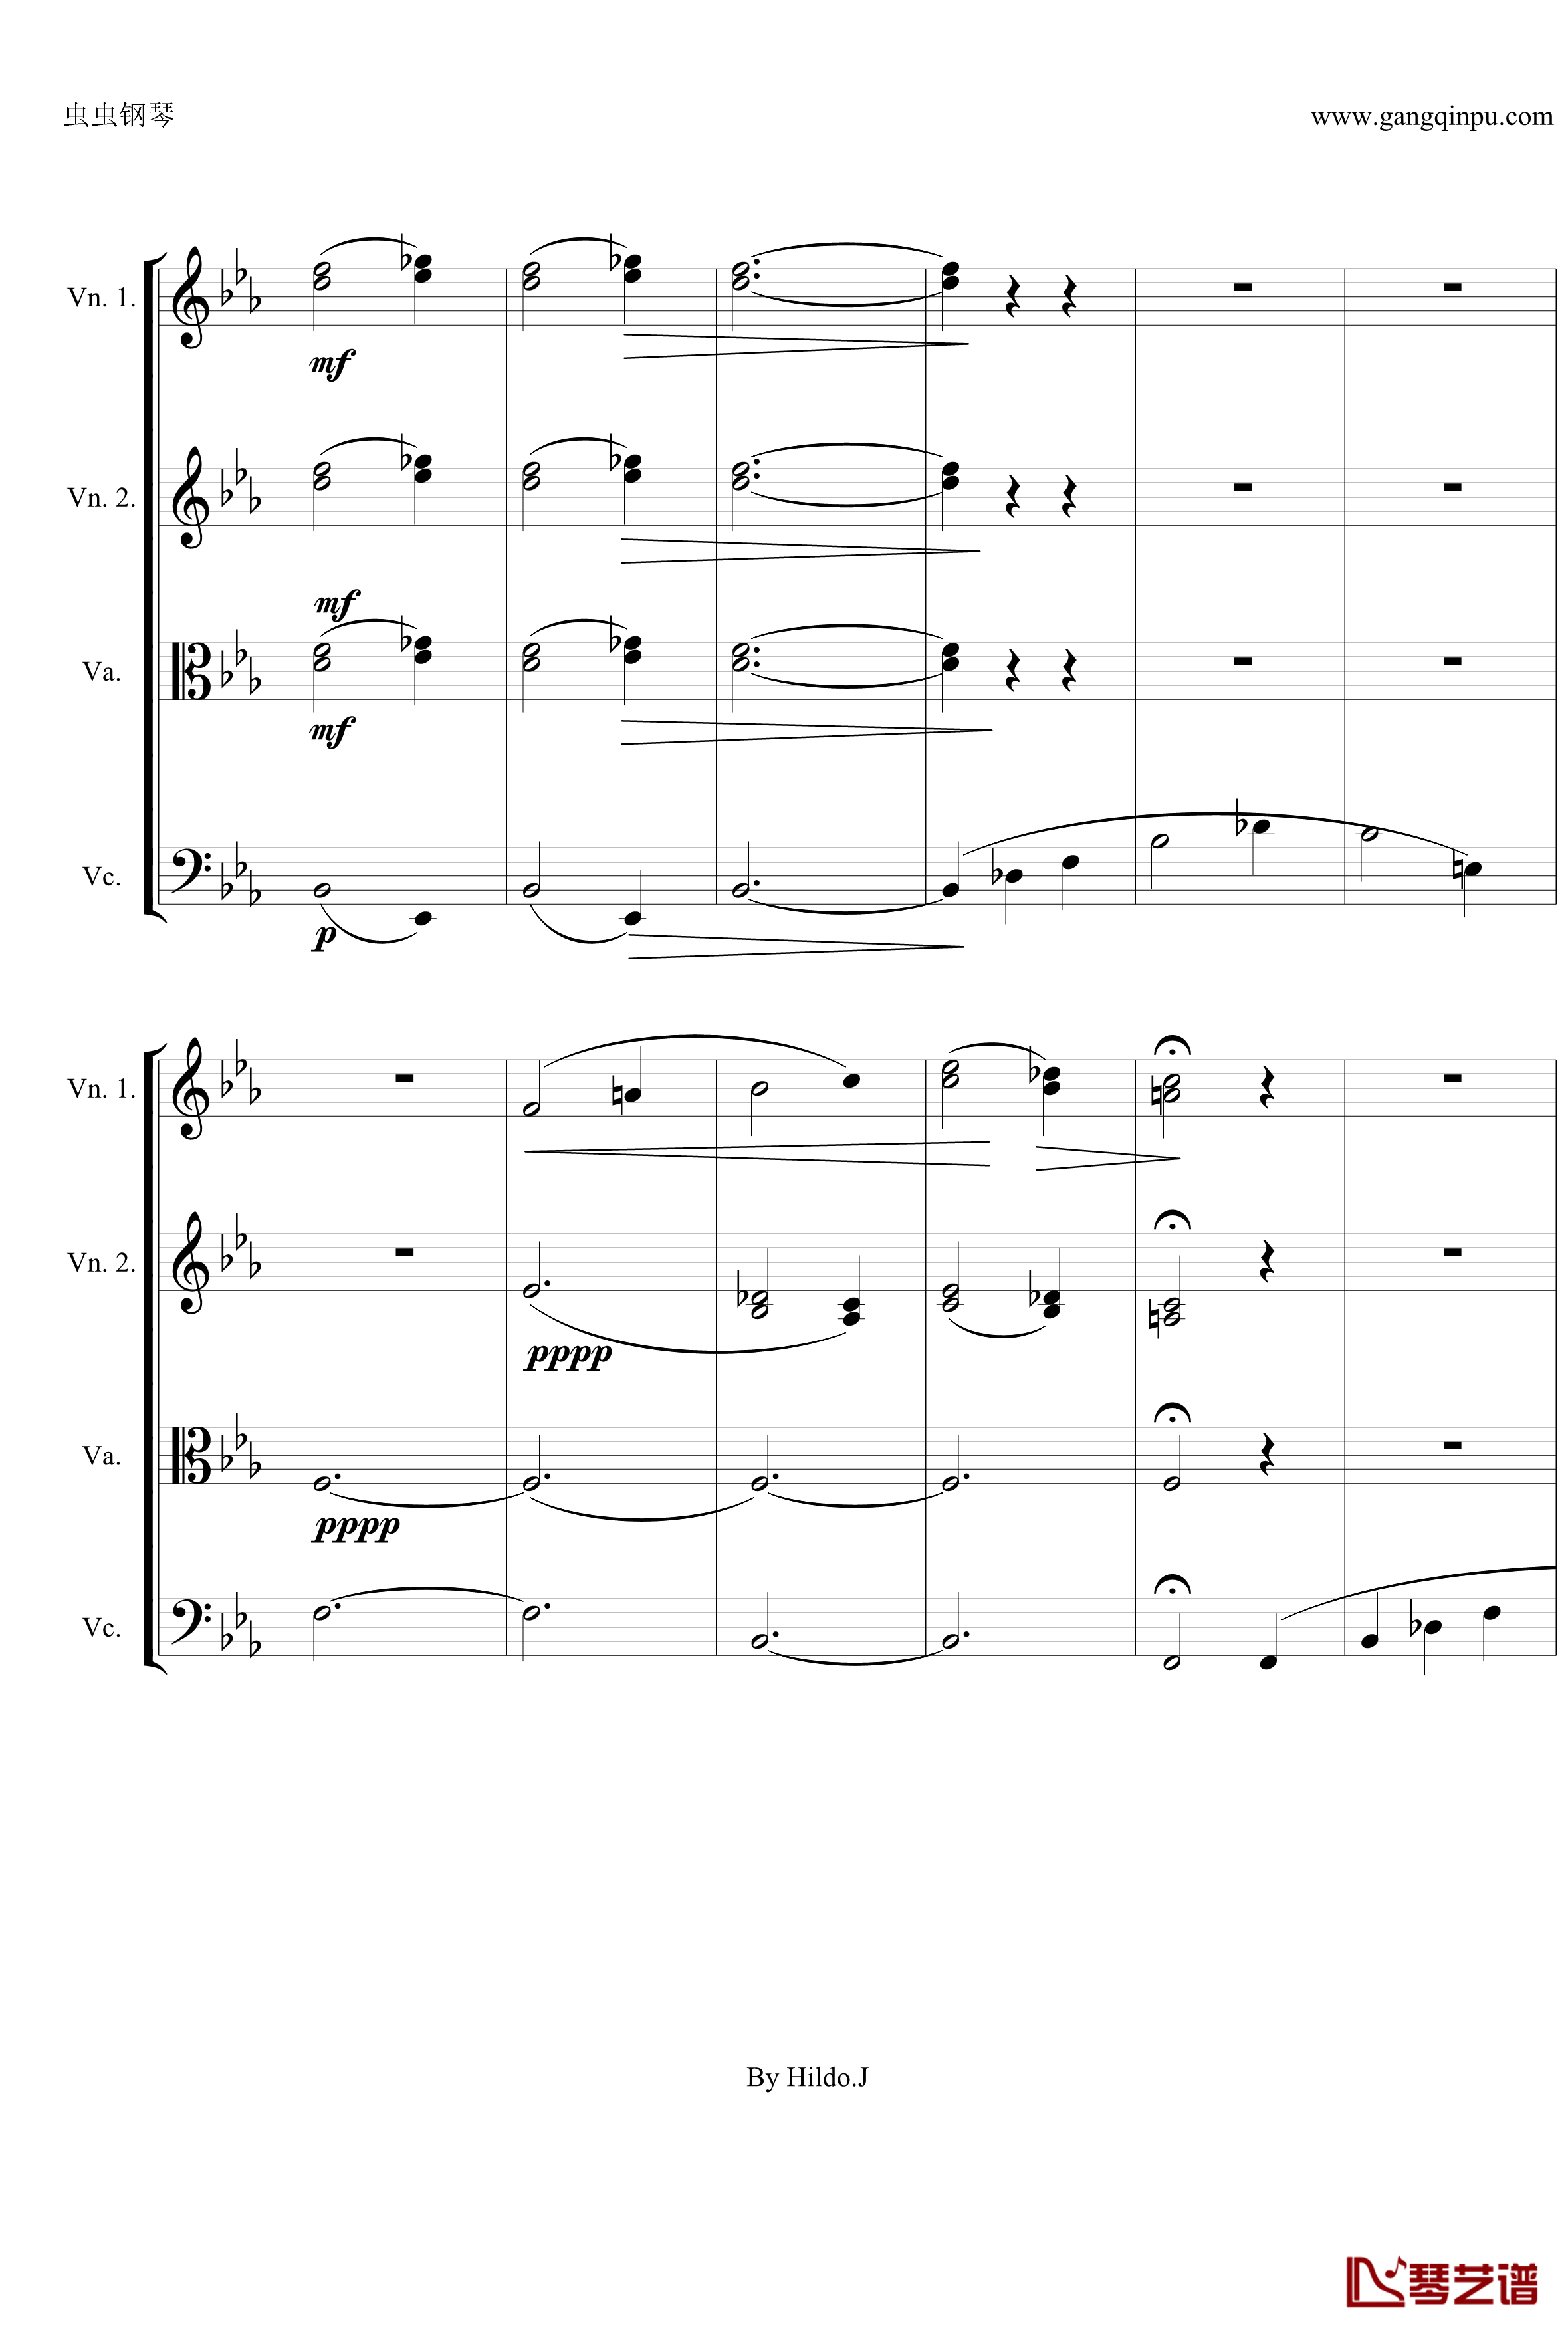 命运交响曲第三乐章钢琴谱-弦乐版-贝多芬-beethoven4